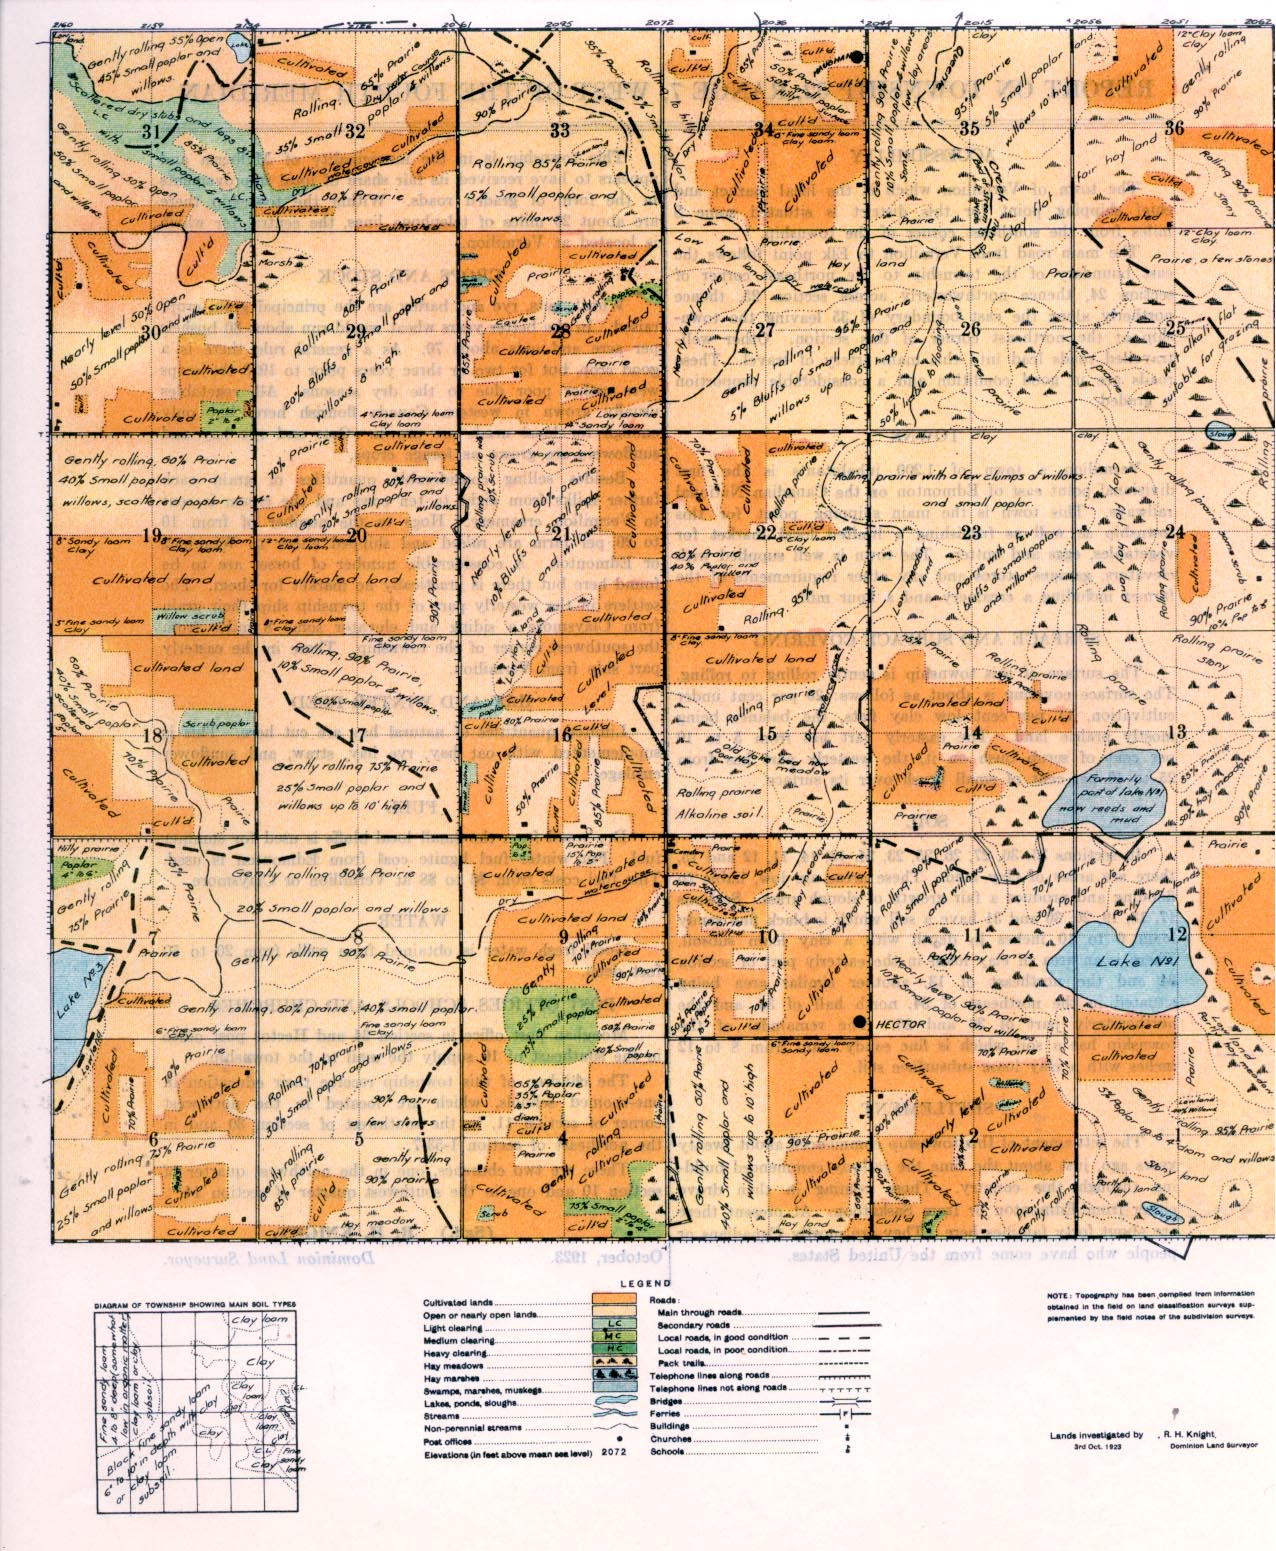 Township 52 Range 7 w 4th 1924